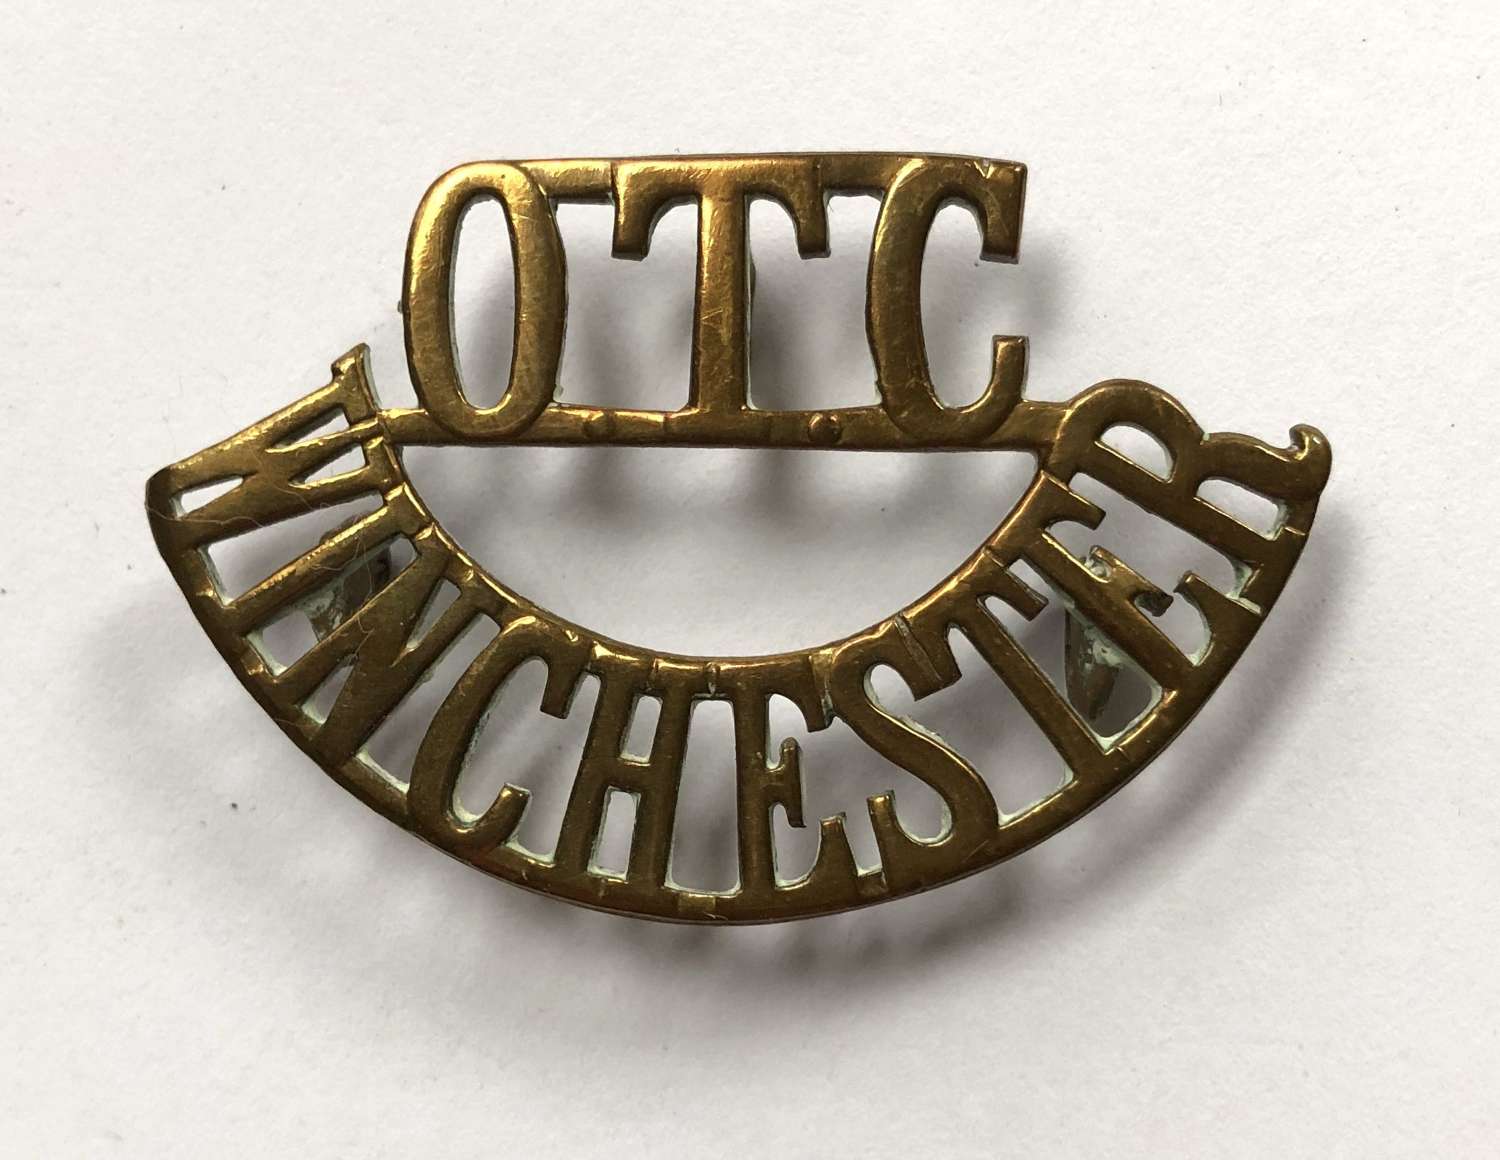 OTC / WINCHESTER shoulder title circa 1908-40